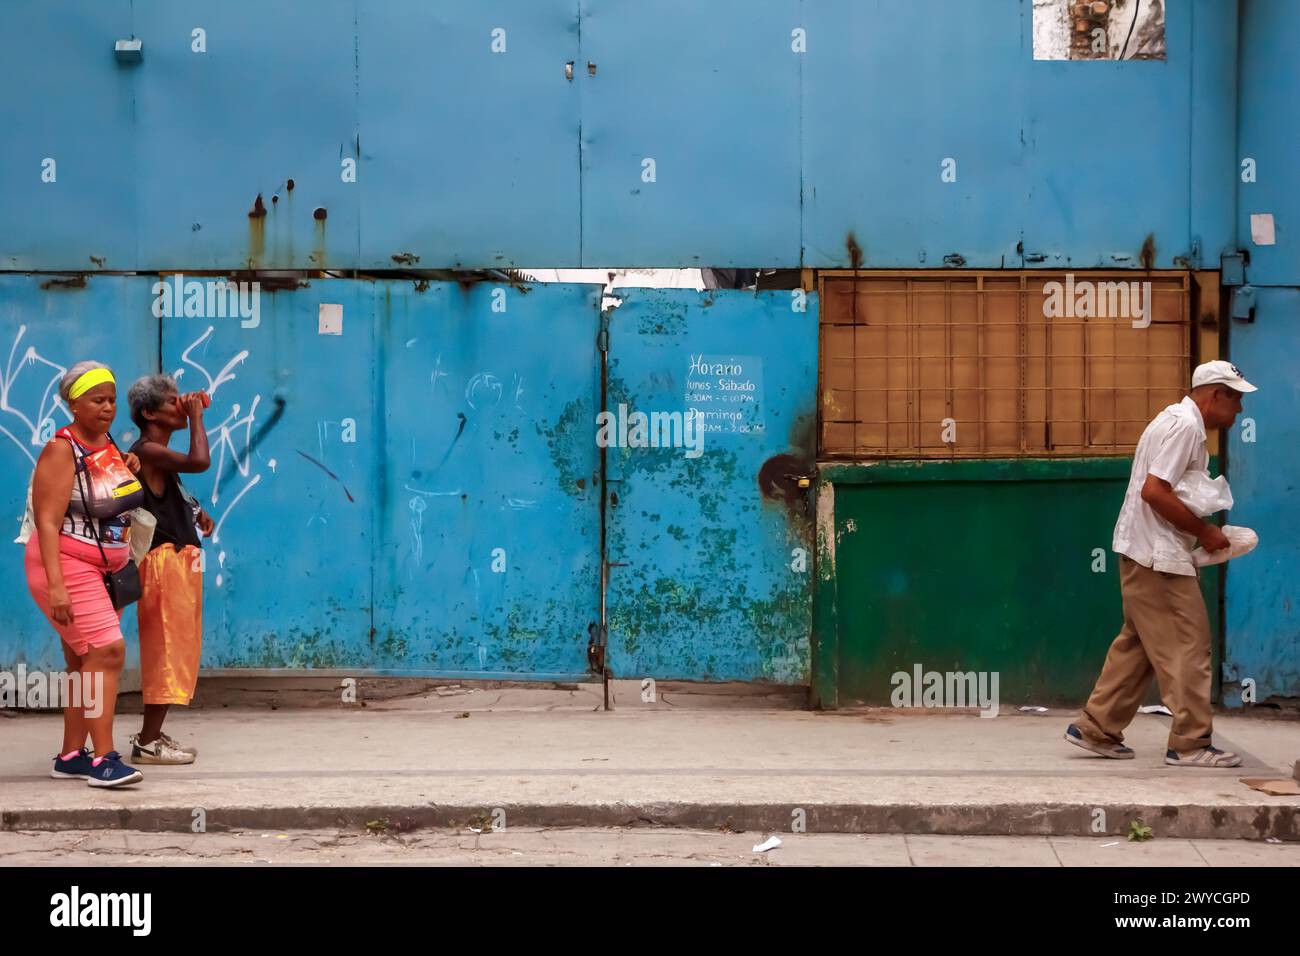 Cuban people walking by dirty metal door and building facade in Havana, Cuba Stock Photo